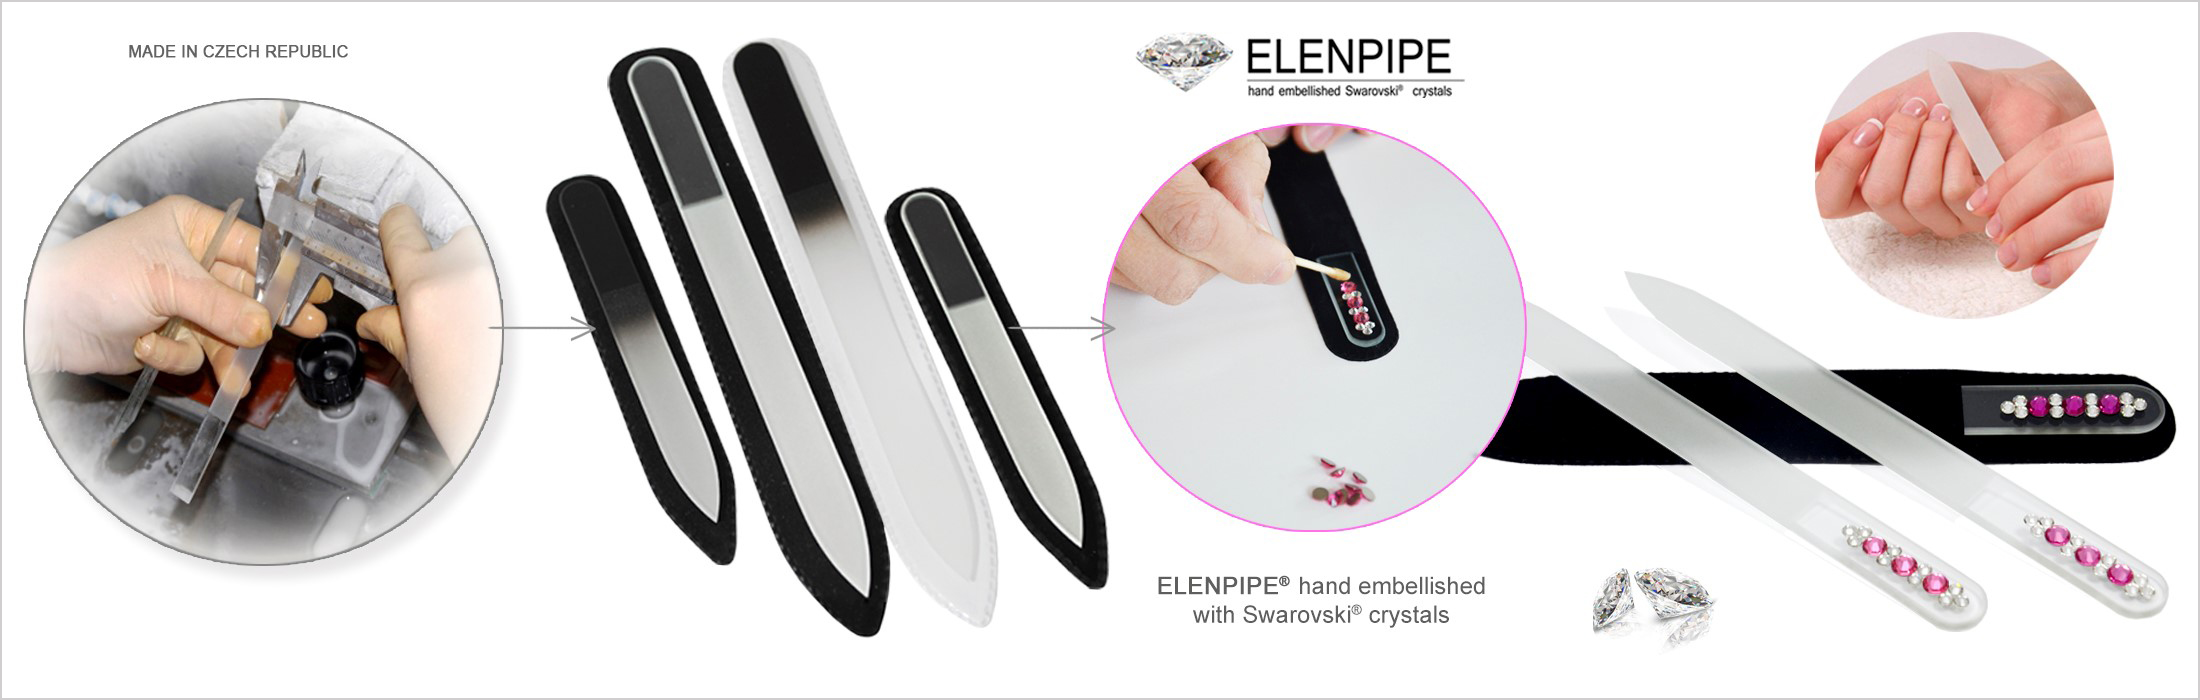 ELENPIPE® - дистриб'ютор пилок для нігтів з богемського скла (кришталю) виробництва Чехія